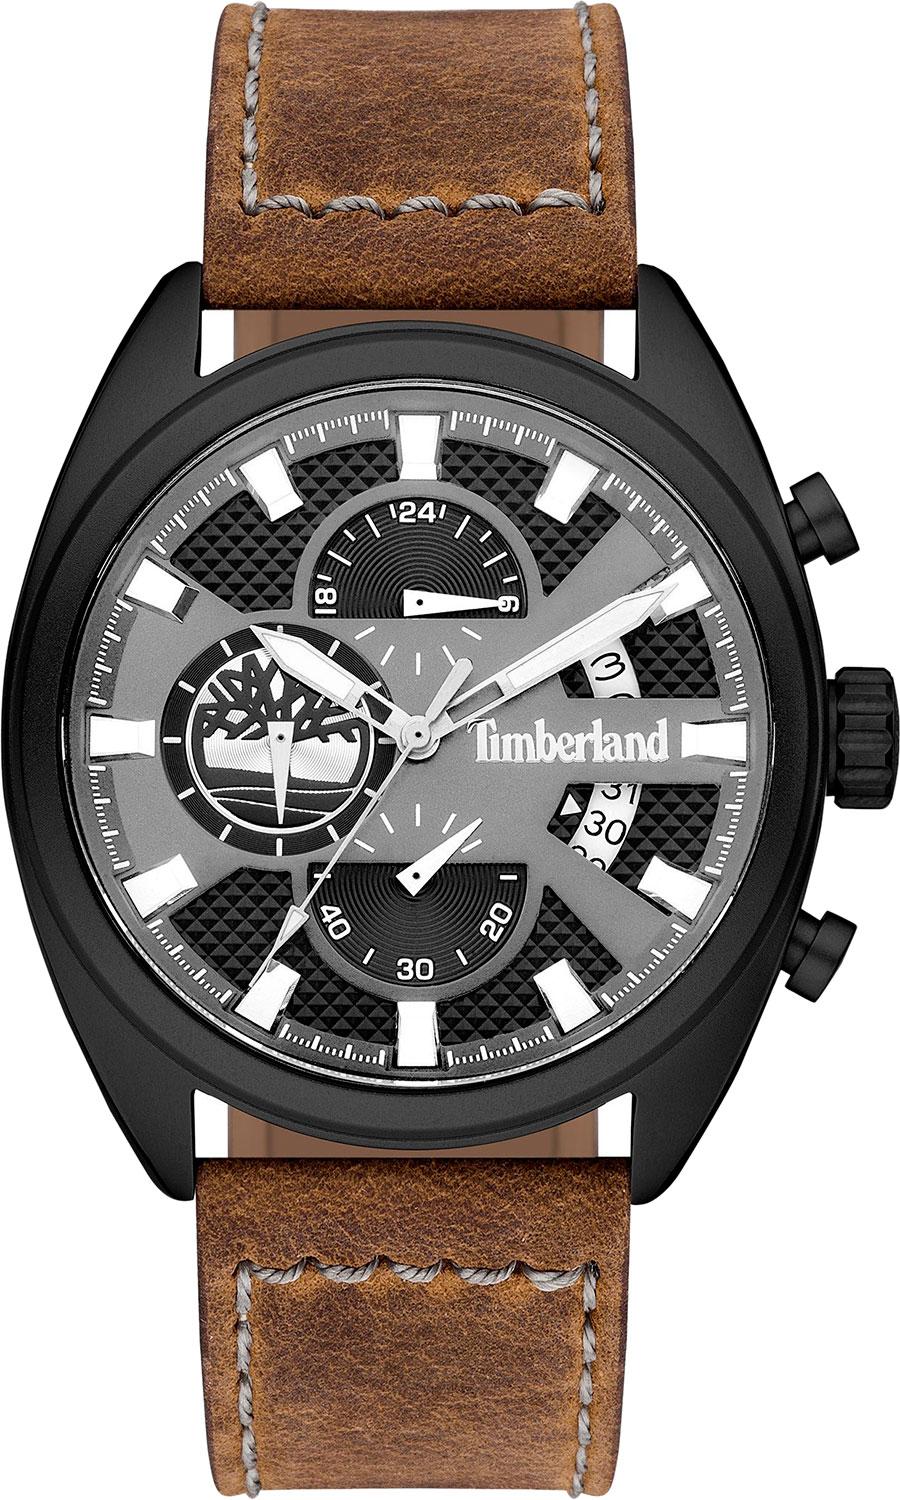 Мужские часы Timberland TBL.15640JLB/61 мужские часы timberland tbl 15954jys 02mm